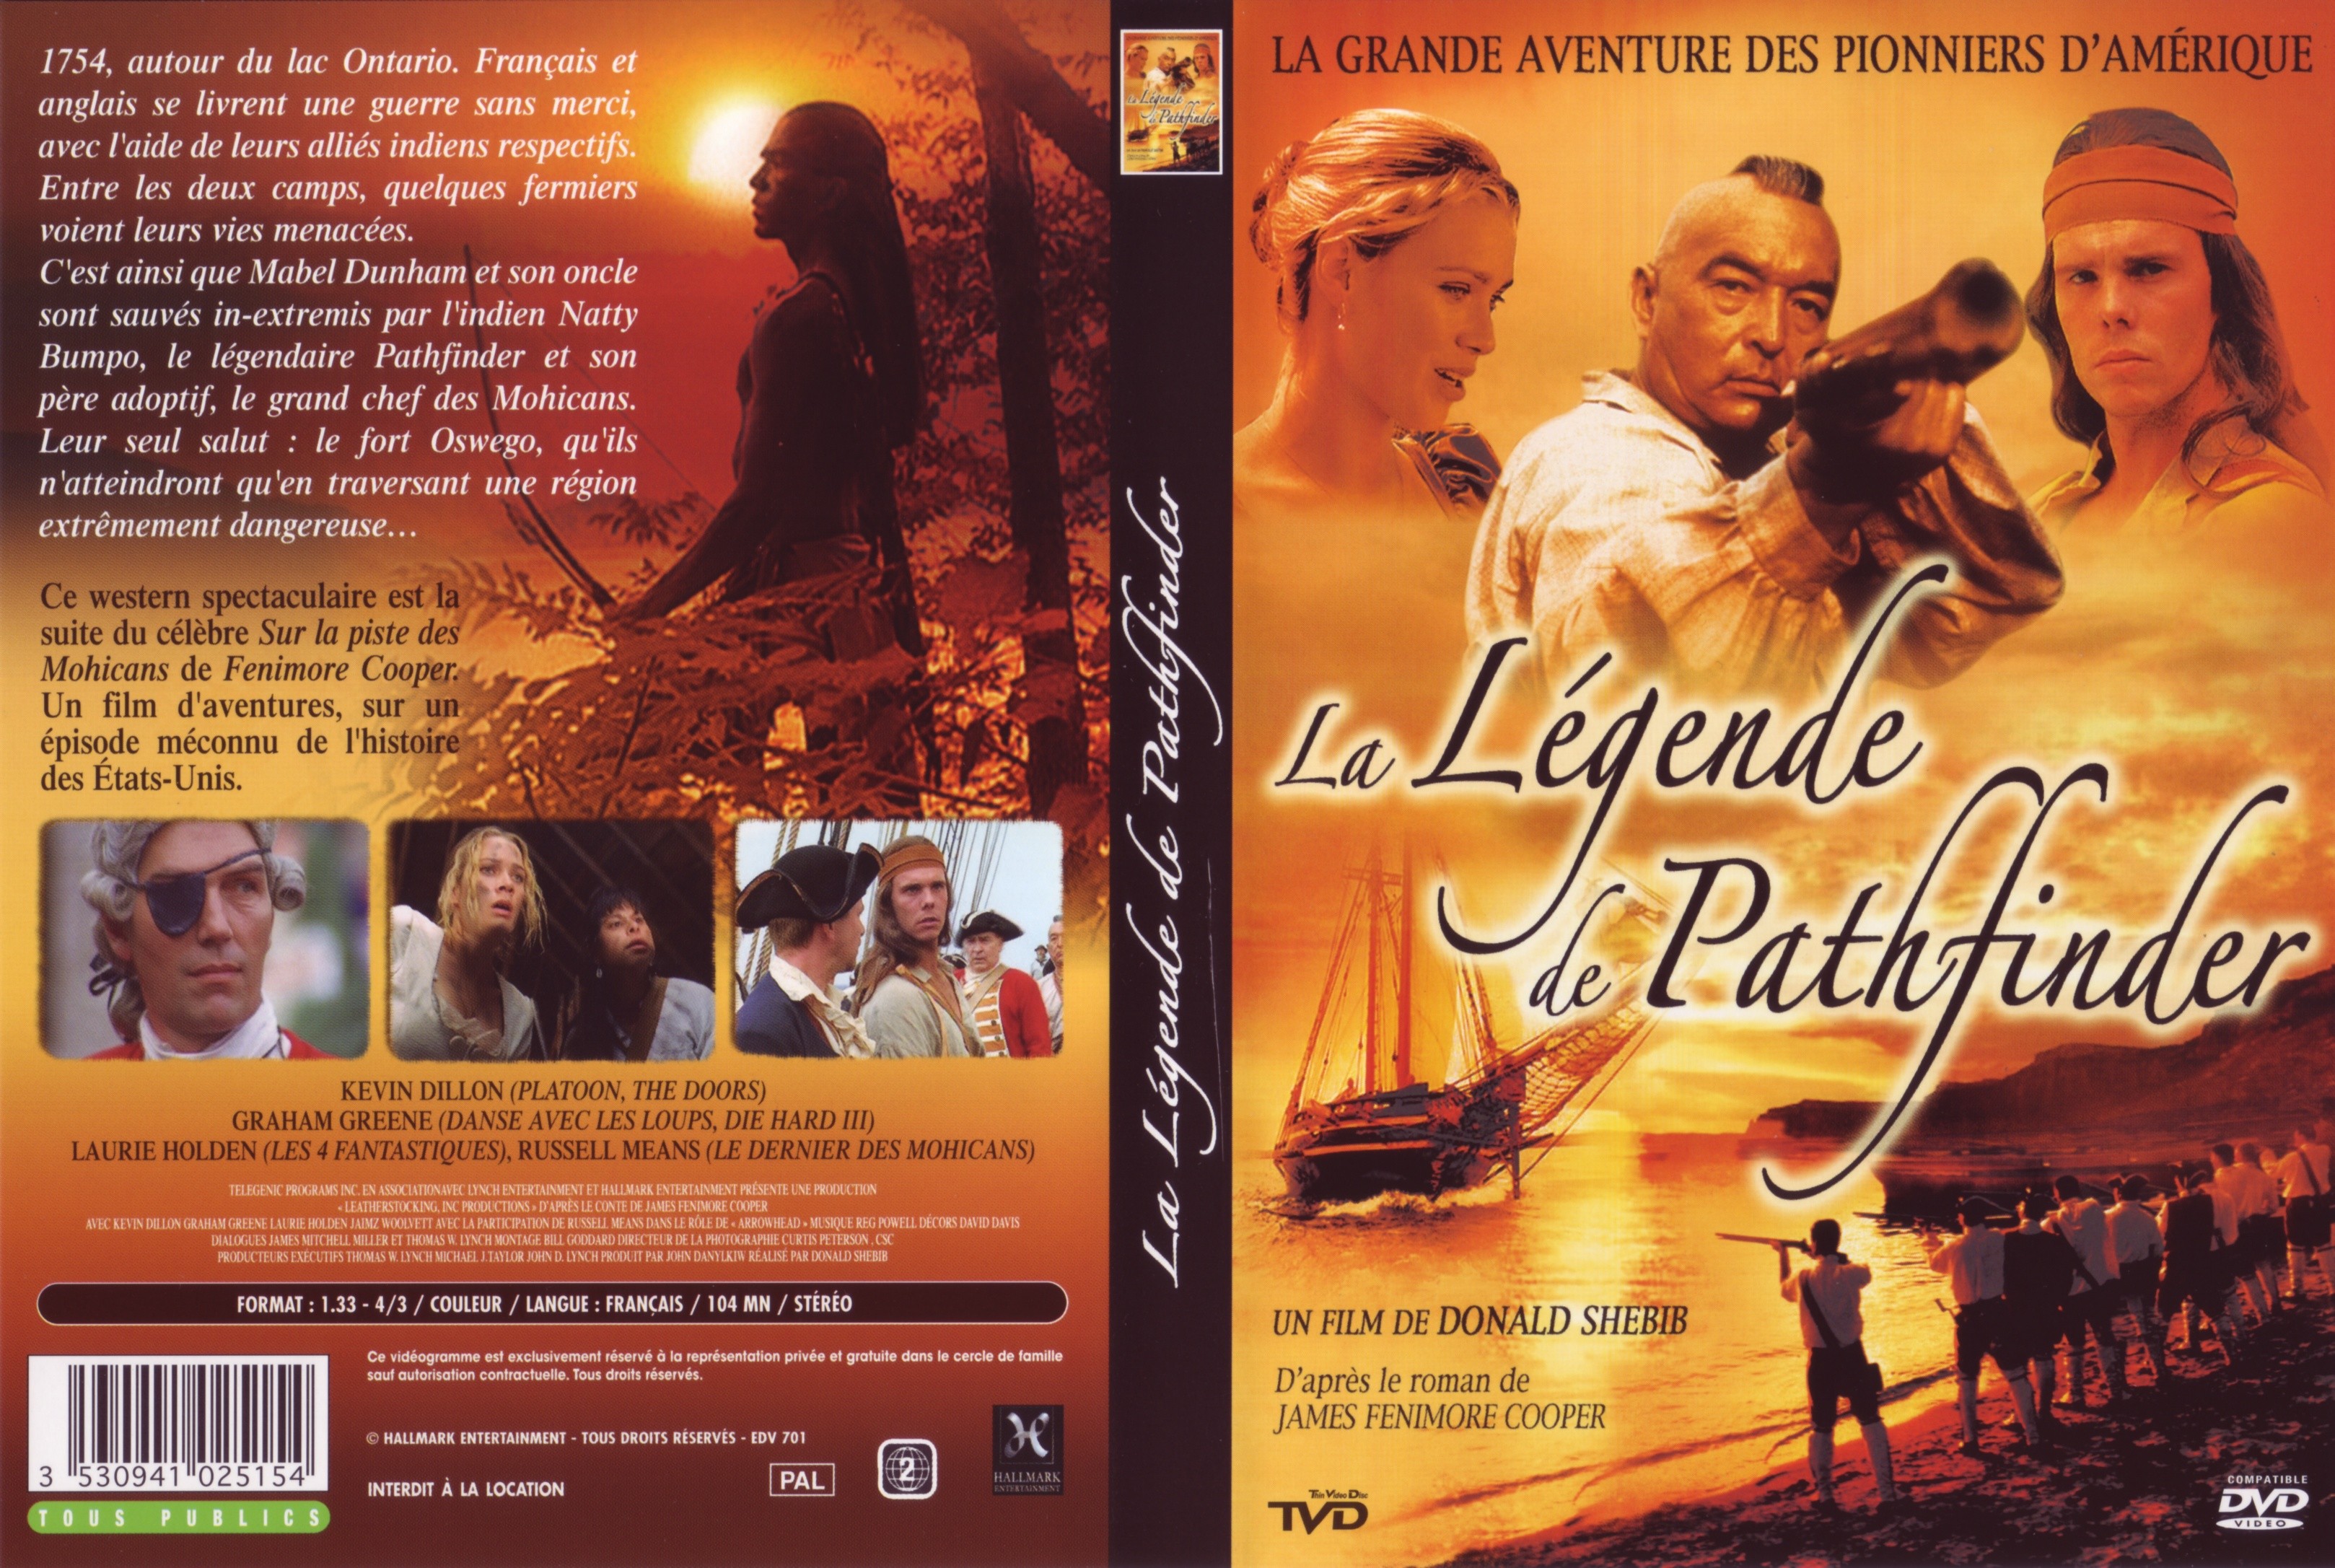 Jaquette DVD La Lgende de Pathfinder